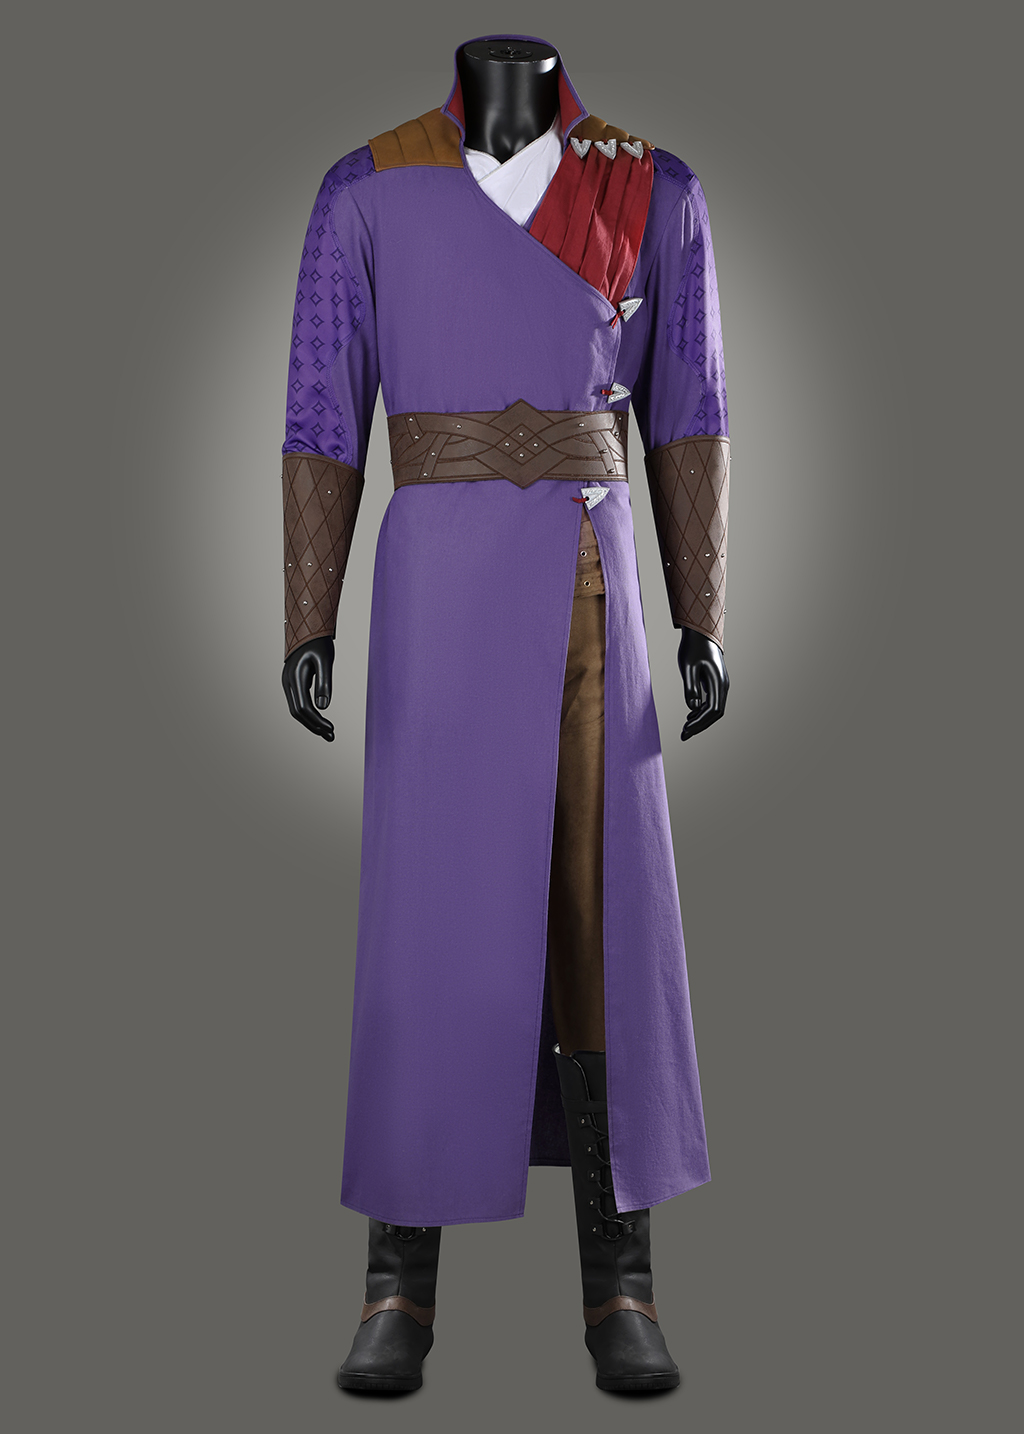 Gale Dekarios Costume Baldur's Gate Suit Cosplay